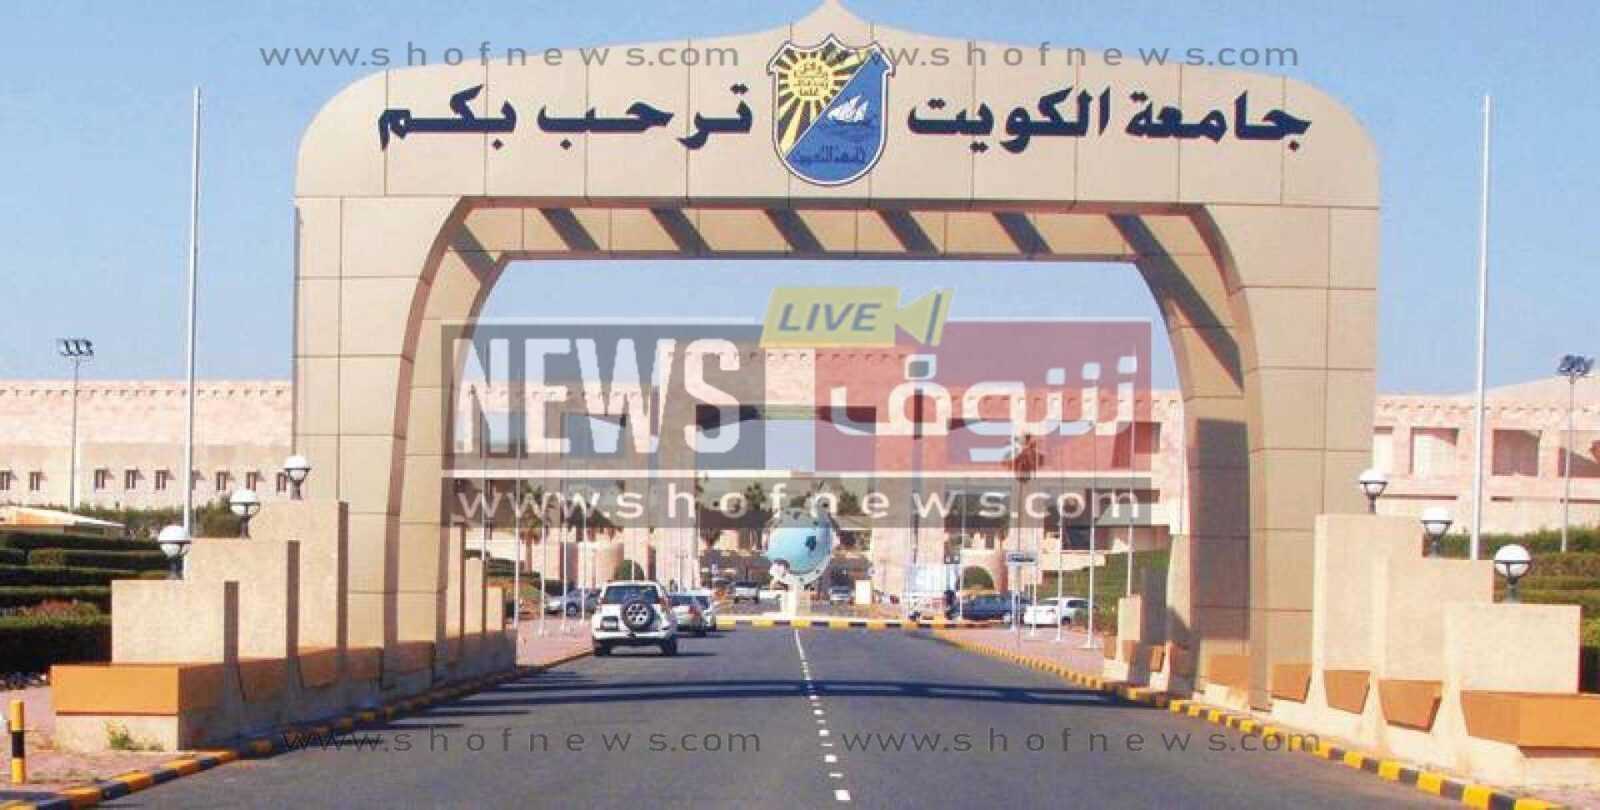 الخطة الزمنية لتقديم طلبات الالتحاق بجامعة الكويت